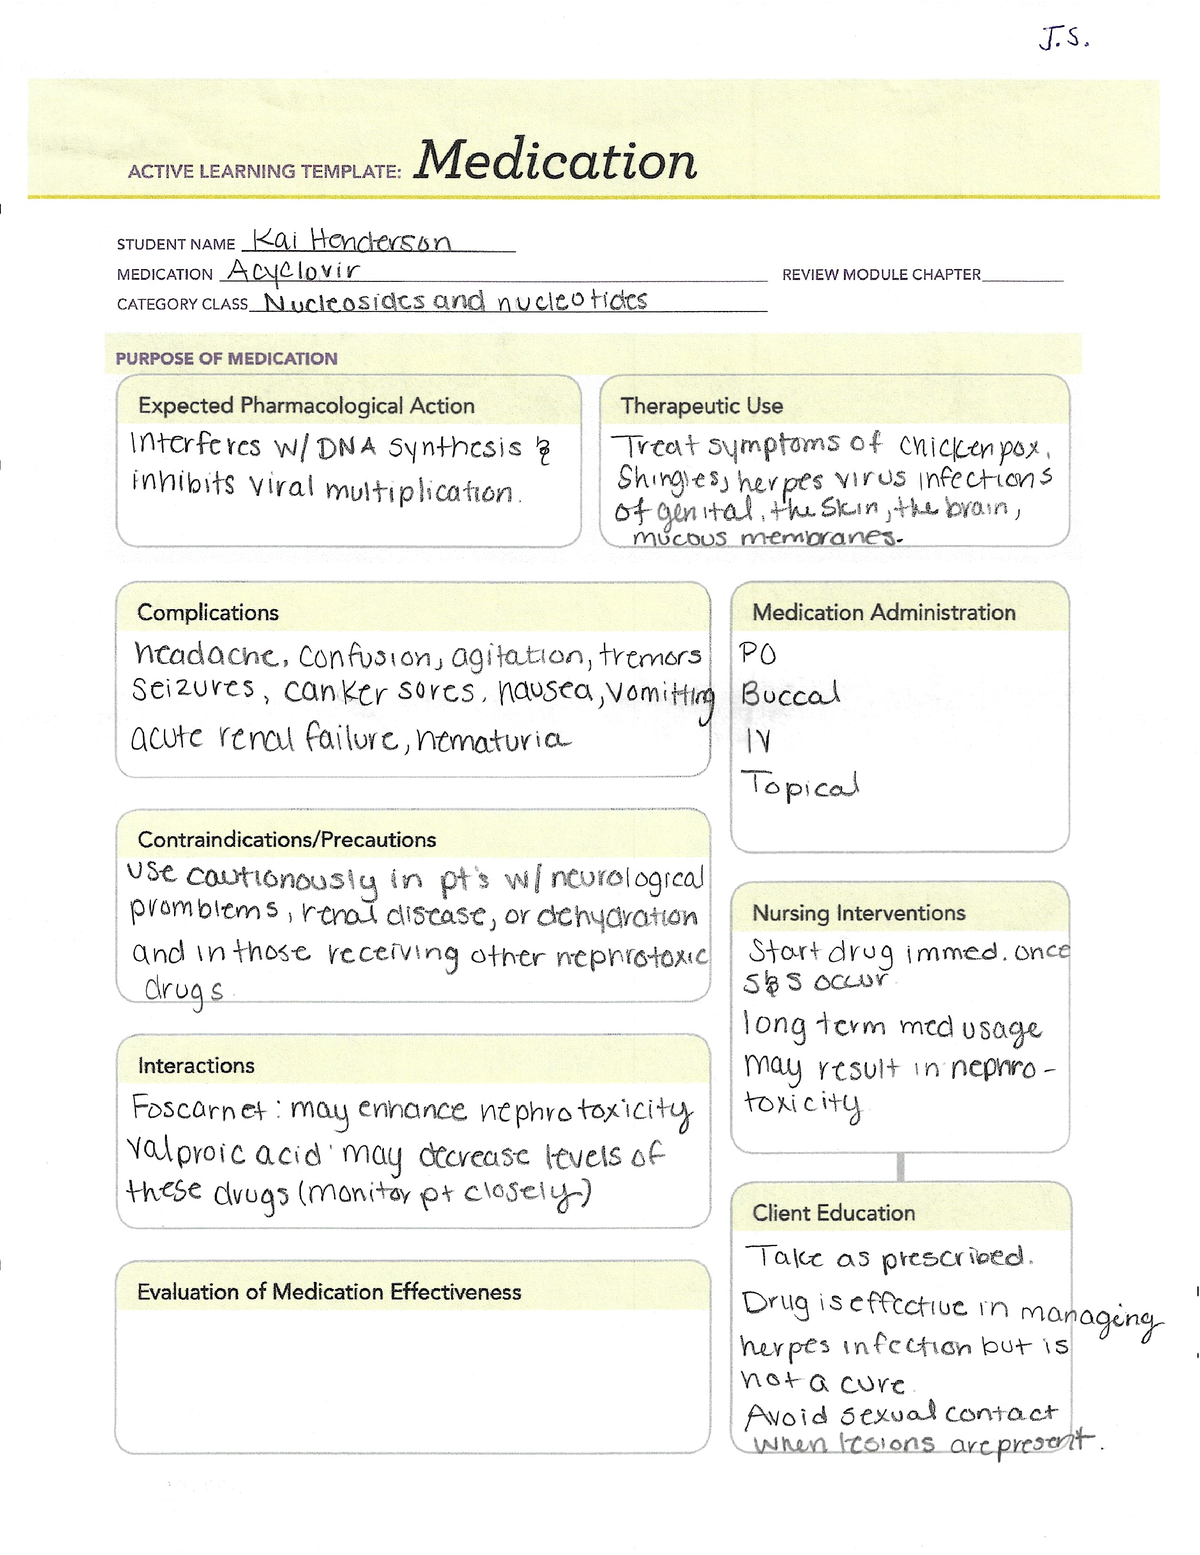 Acyclovir medication templates for active learning NUR150 StuDocu